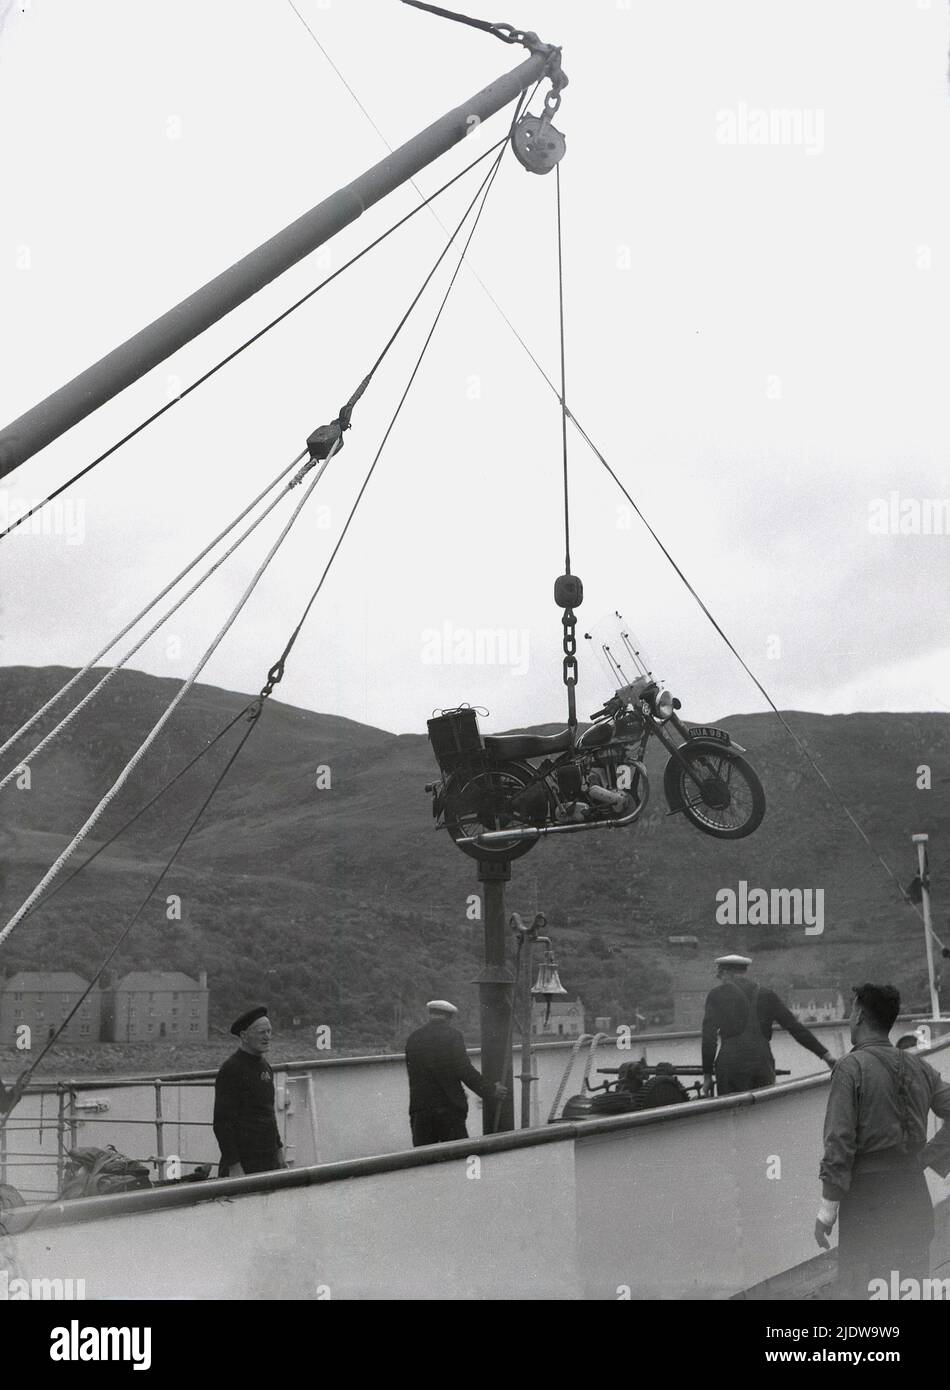 1950s, historisch, am Hafen von Mallaig in den schottischen Highlands, Schottland, Großbritannien, wurde ein Motorrad der damaligen Zeit auf einer Riemenscheibe auf ein Schiff geladen. Das Motorrad ist ein Ariel 'Square Four', auch bekannt als der 'Squariel'. Hergestellt vom Briitsh-Hersteller Ariel Motors Ltd. Aus Birmingham aus dem Jahr 1953, hatte es einen 1000cc 4-Zylinder-Motor - den größten jemals in Großbritannien produzierten - was es ideal für Motorradtouren machte. Stockfoto